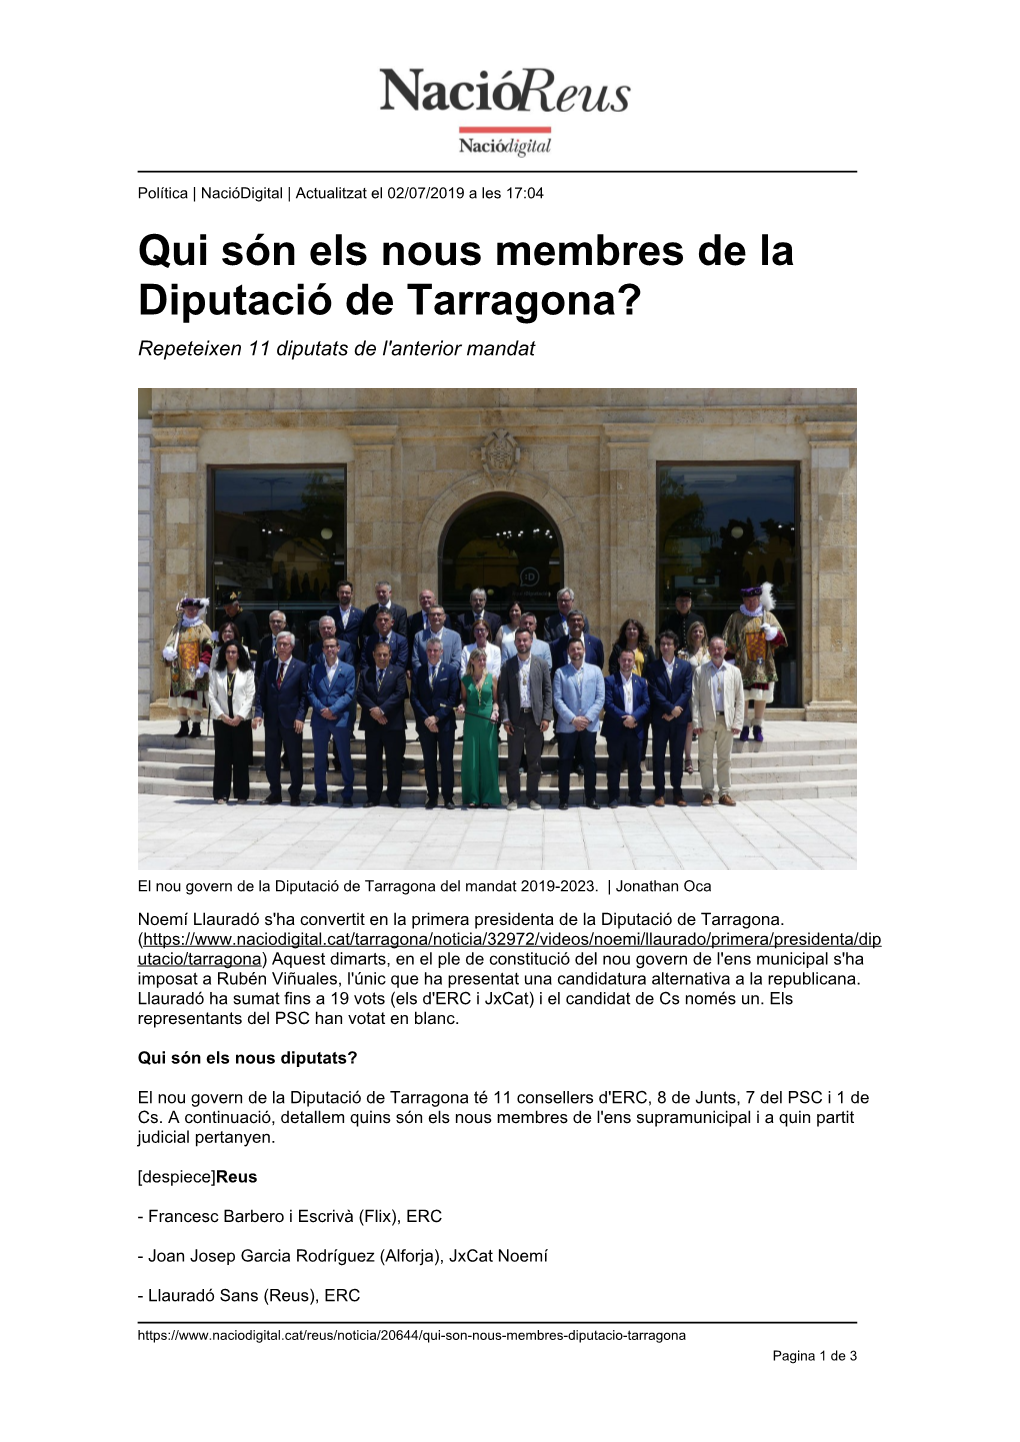 Qui Són Els Nous Membres De La Diputació De Tarragona? Repeteixen 11 Diputats De L'anterior Mandat